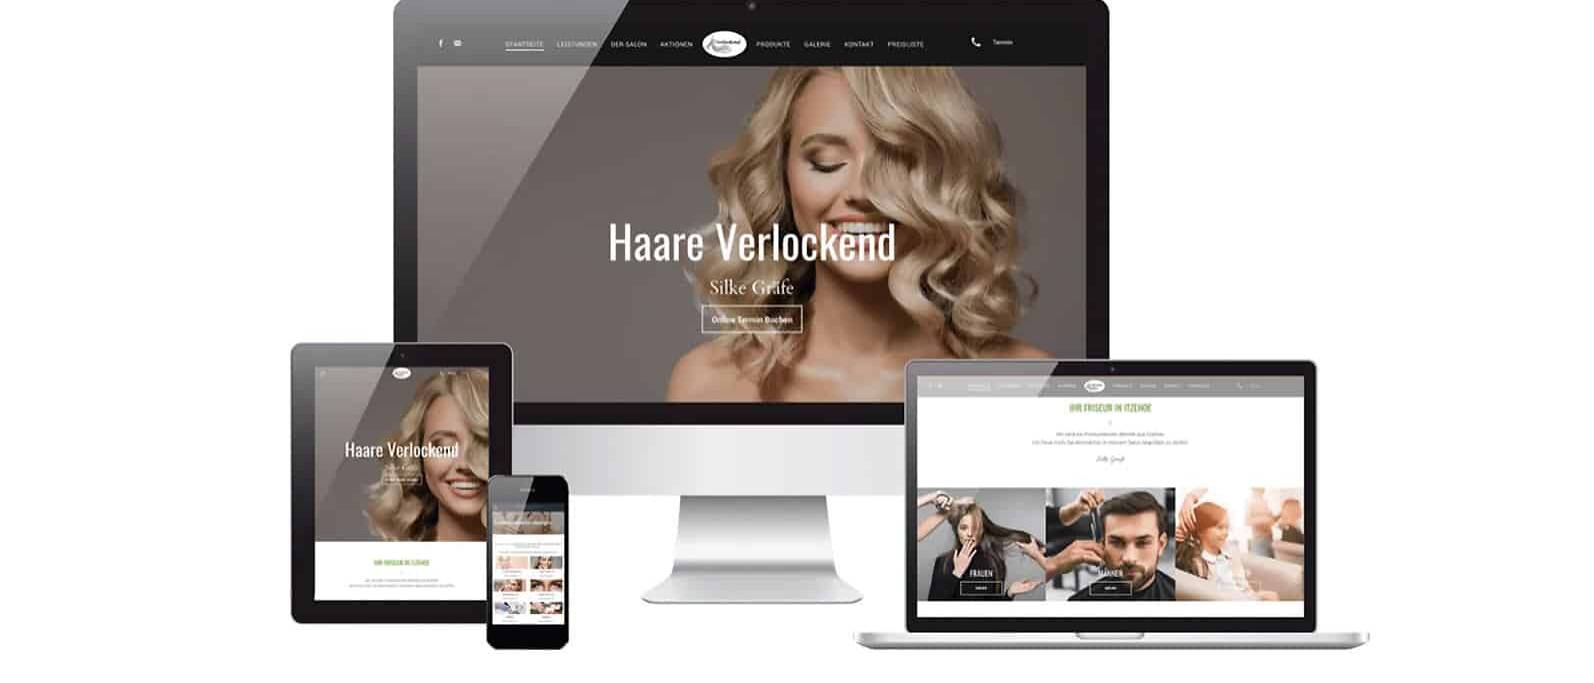 Responsive Webdesign Mockup der Website Haare Verlockend